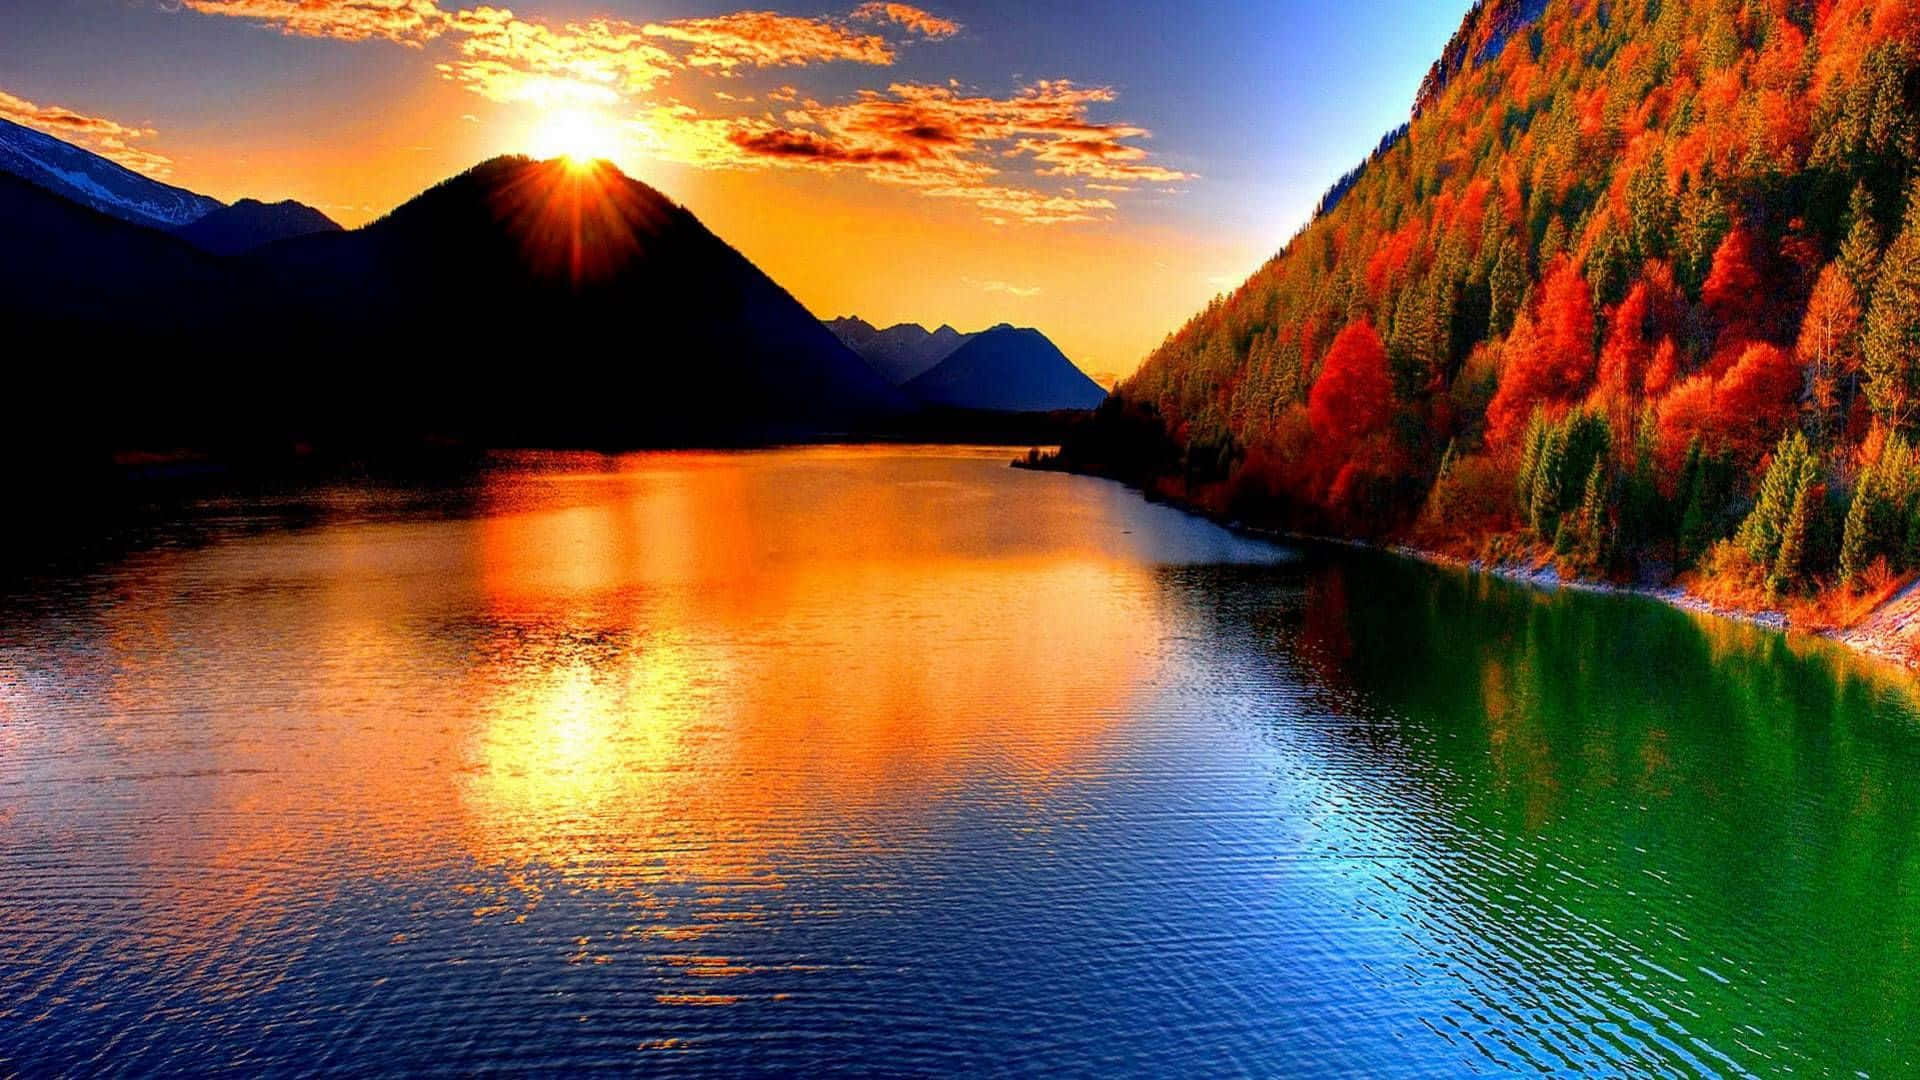 Vivid Autumn Mountains Sunset Scenery Wallpaper